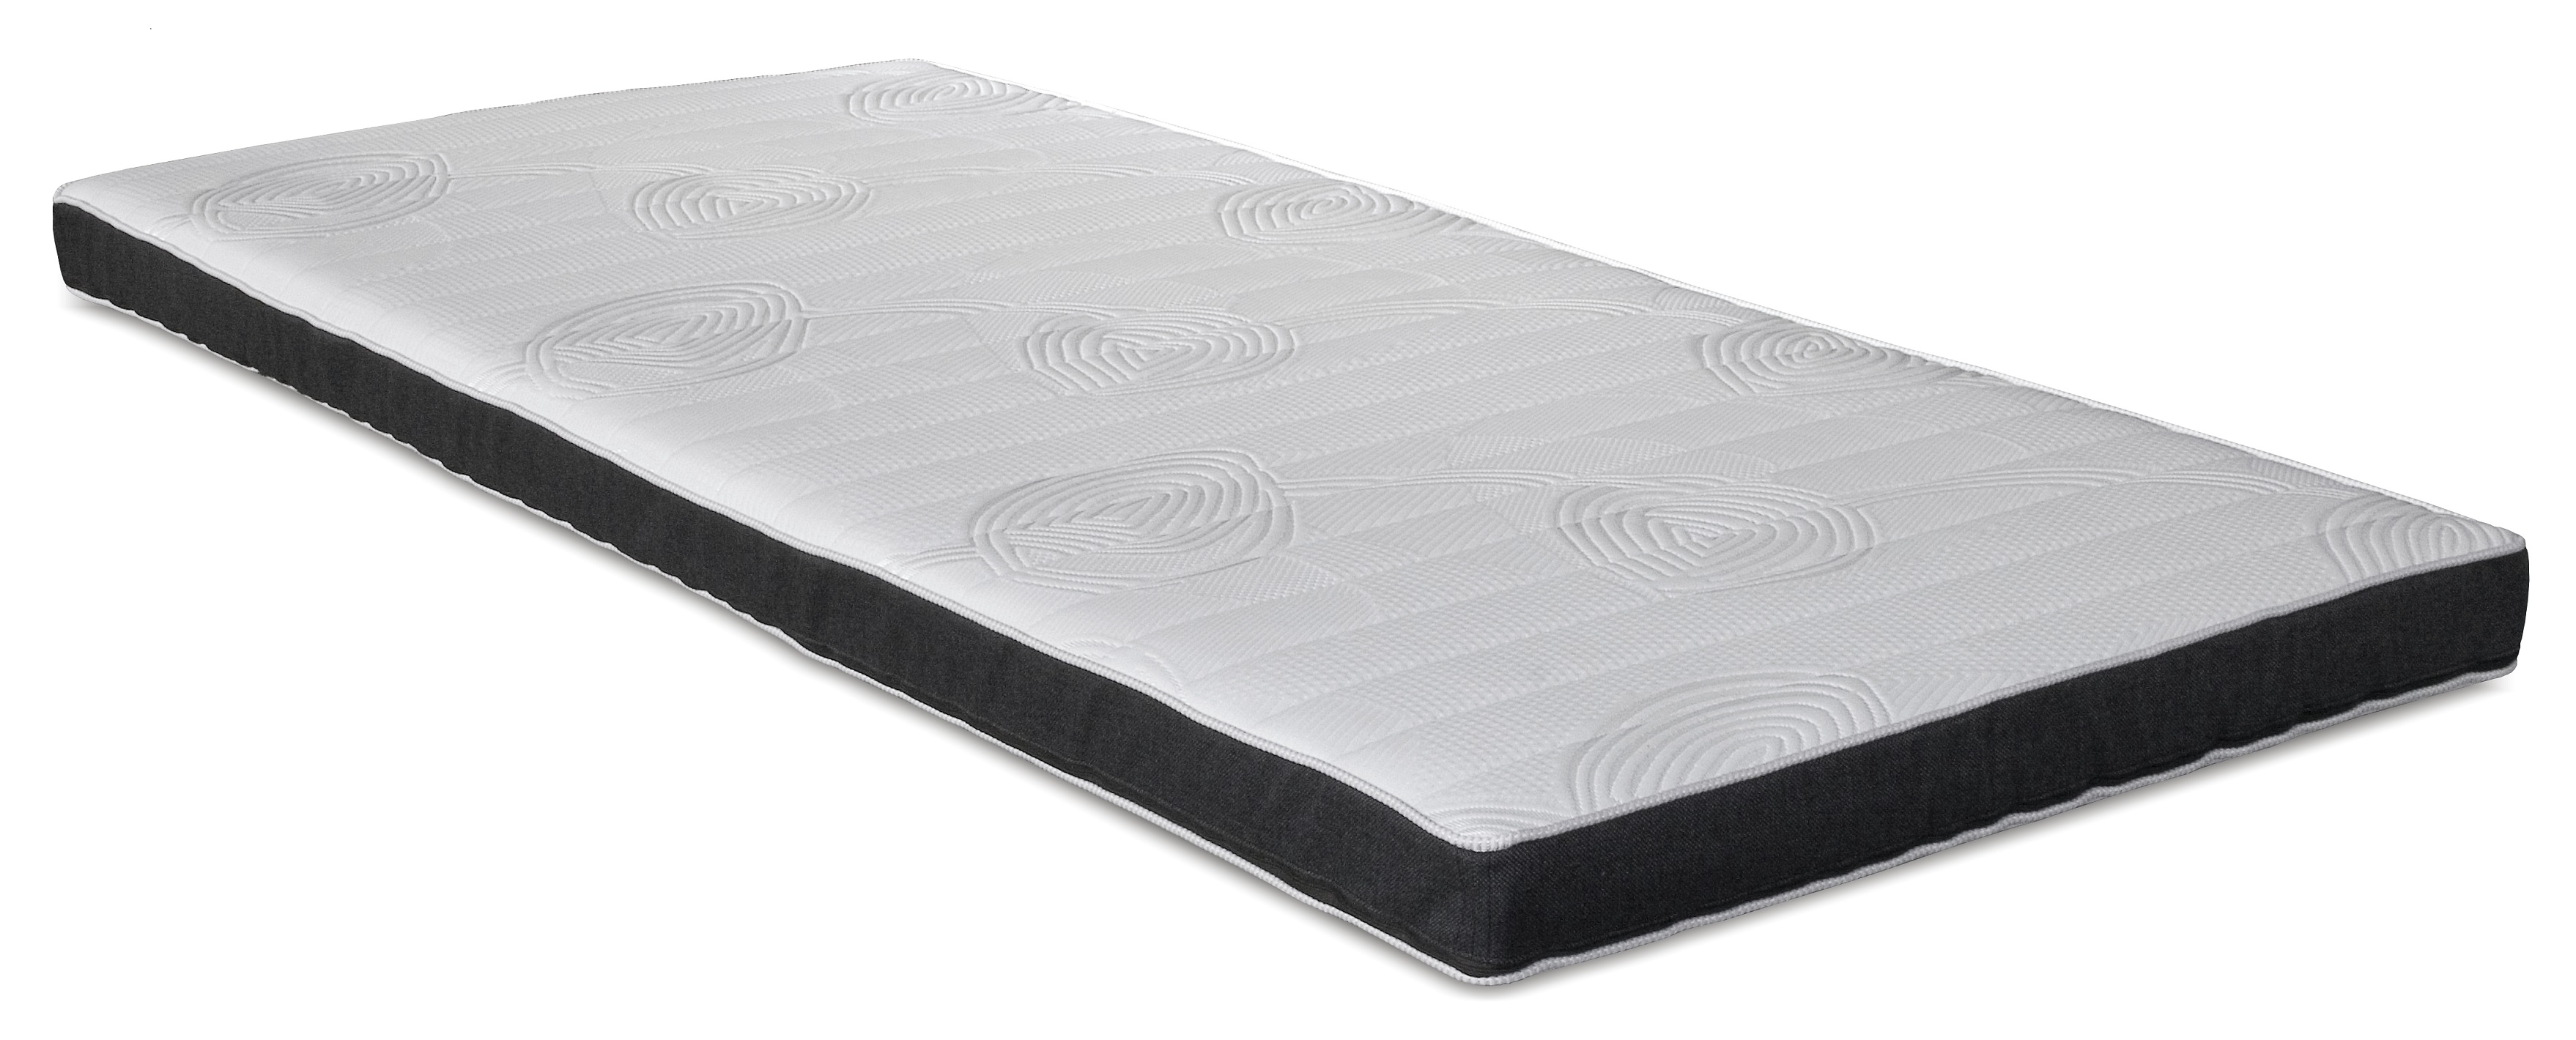 ASCOT TOP mattress5